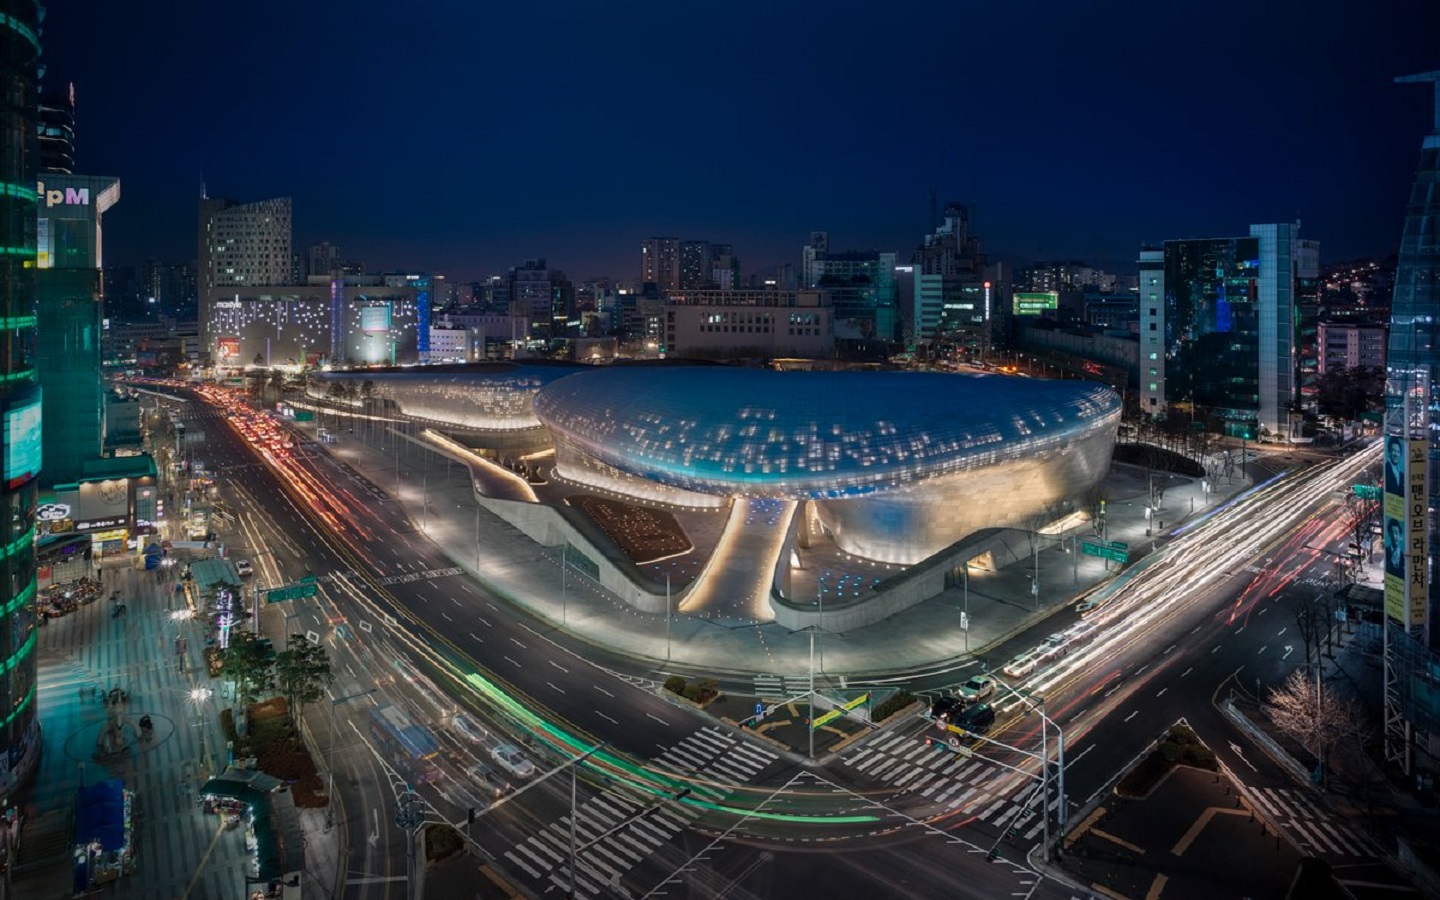 Conheça o Dongdaemun Design Plaza, em Seul, Coreia do Sul. Uma obra de Zaha Hadid que transformou a região na capital mundial do design.